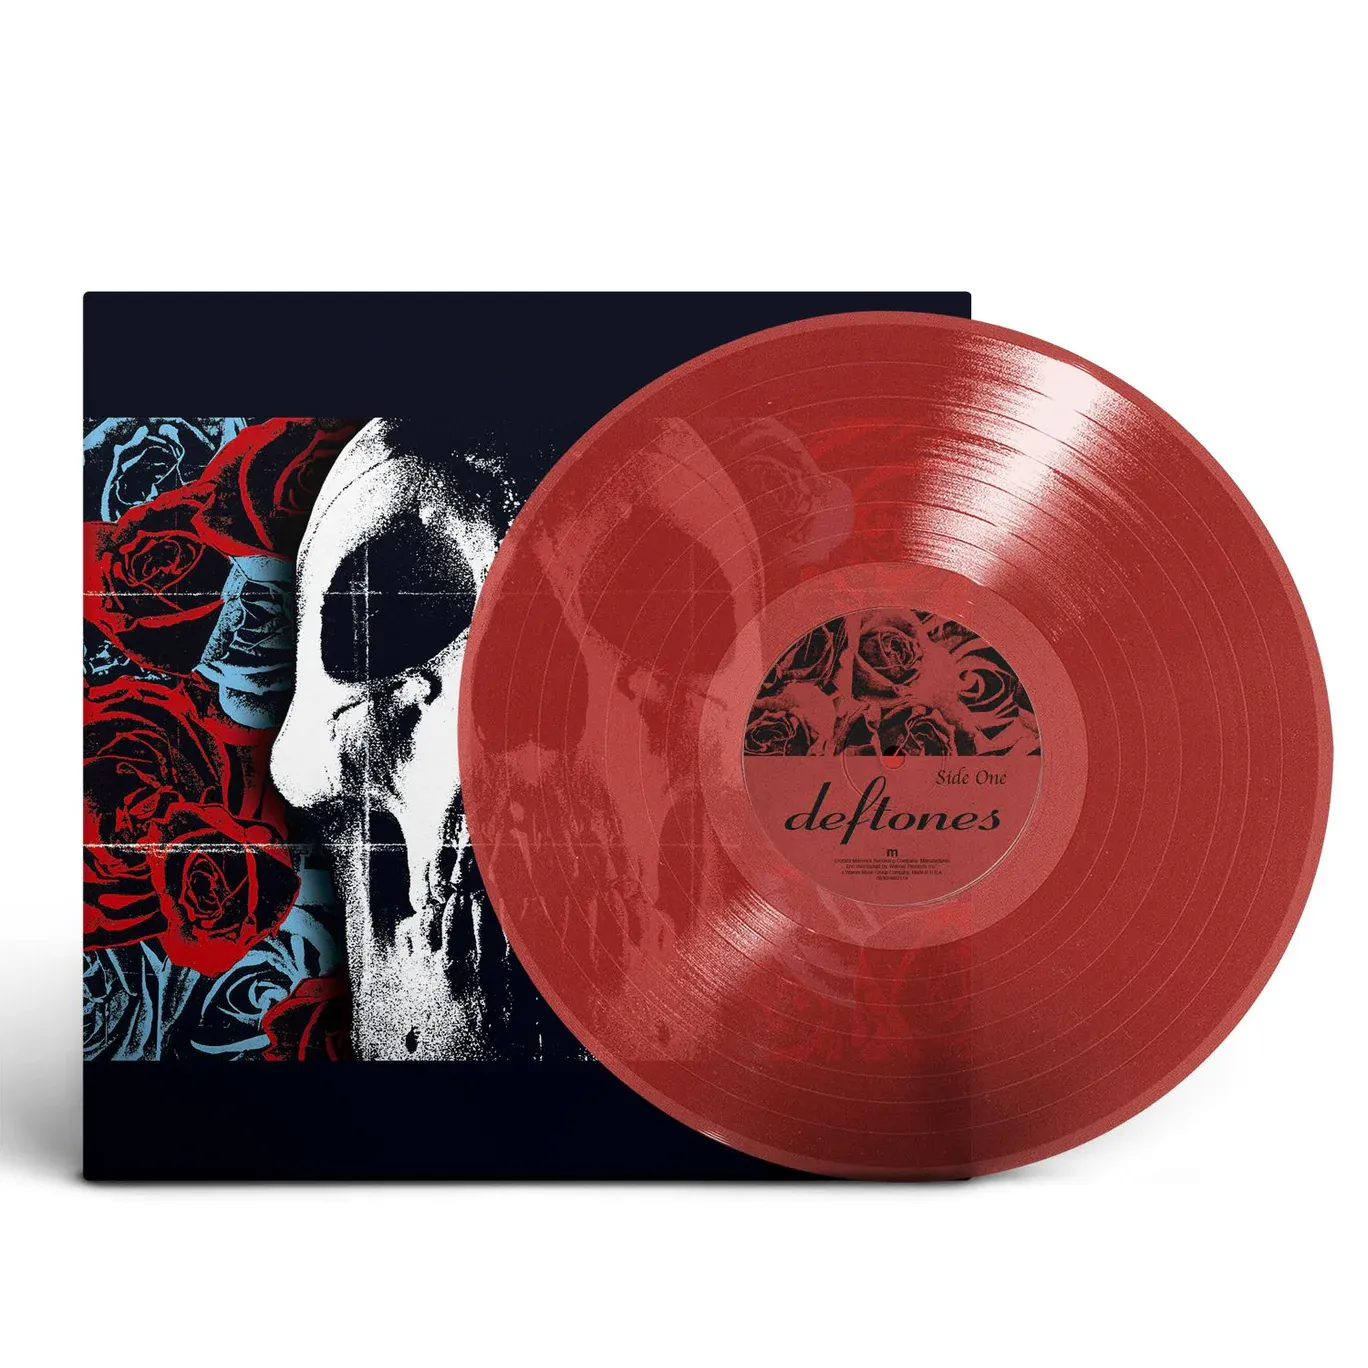 Deftones празднуют 20-летие своего одноименного альбома переизданием на виниле